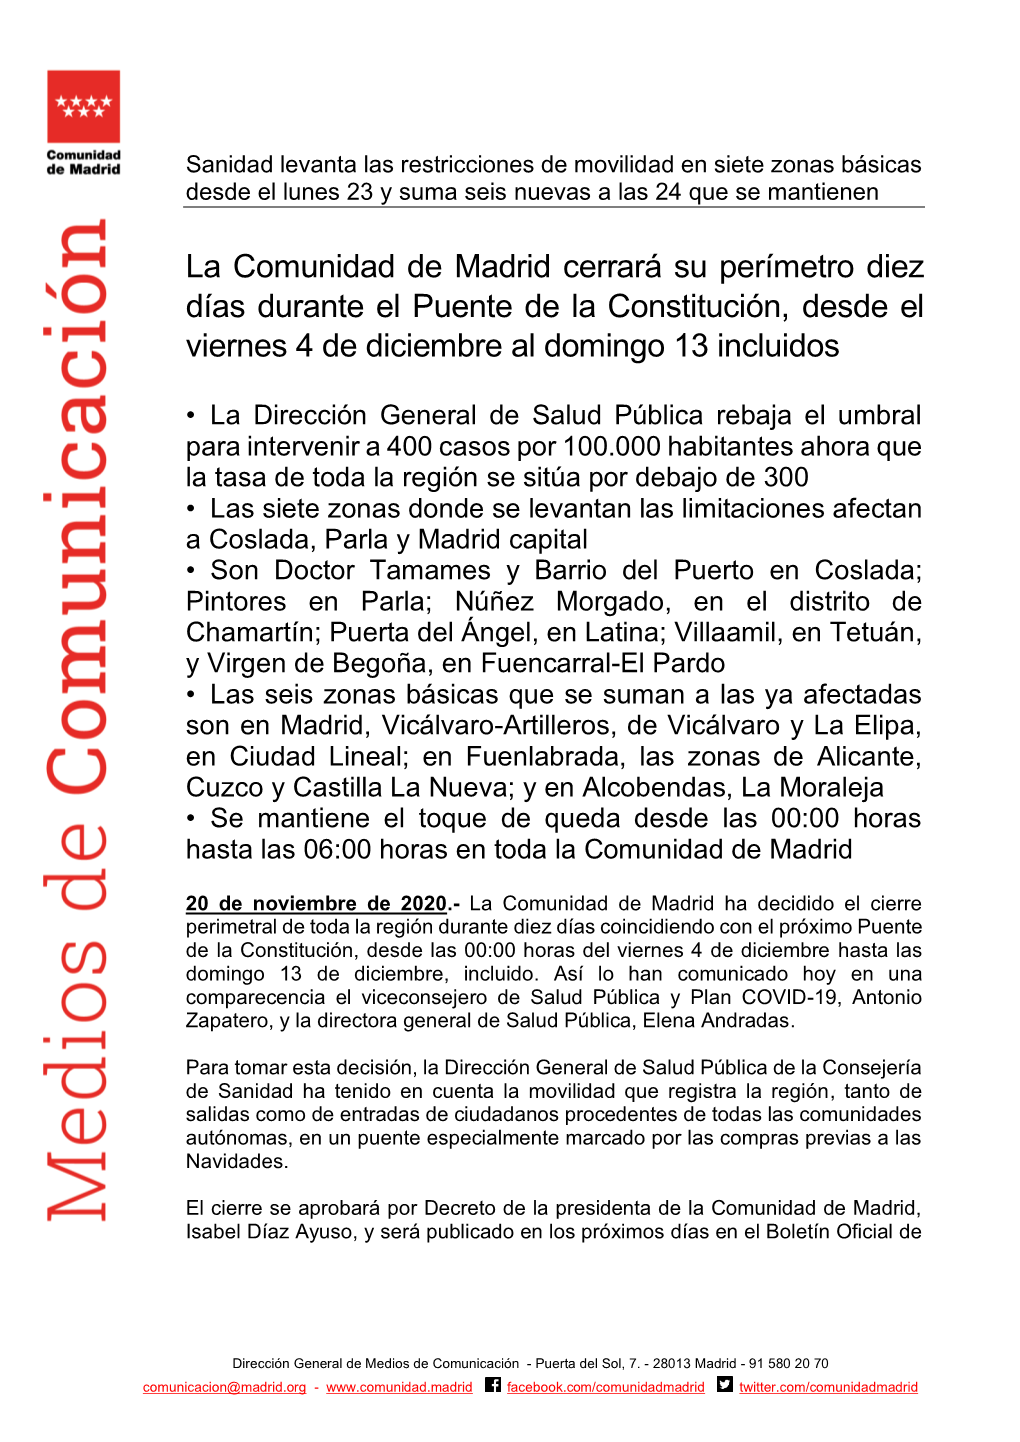 La Comunidad De Madrid Cerrará Su Perímetro Diez Días Durante El Puente De La Constitución, Desde El Viernes 4 De Diciembre Al Domingo 13 Incluidos